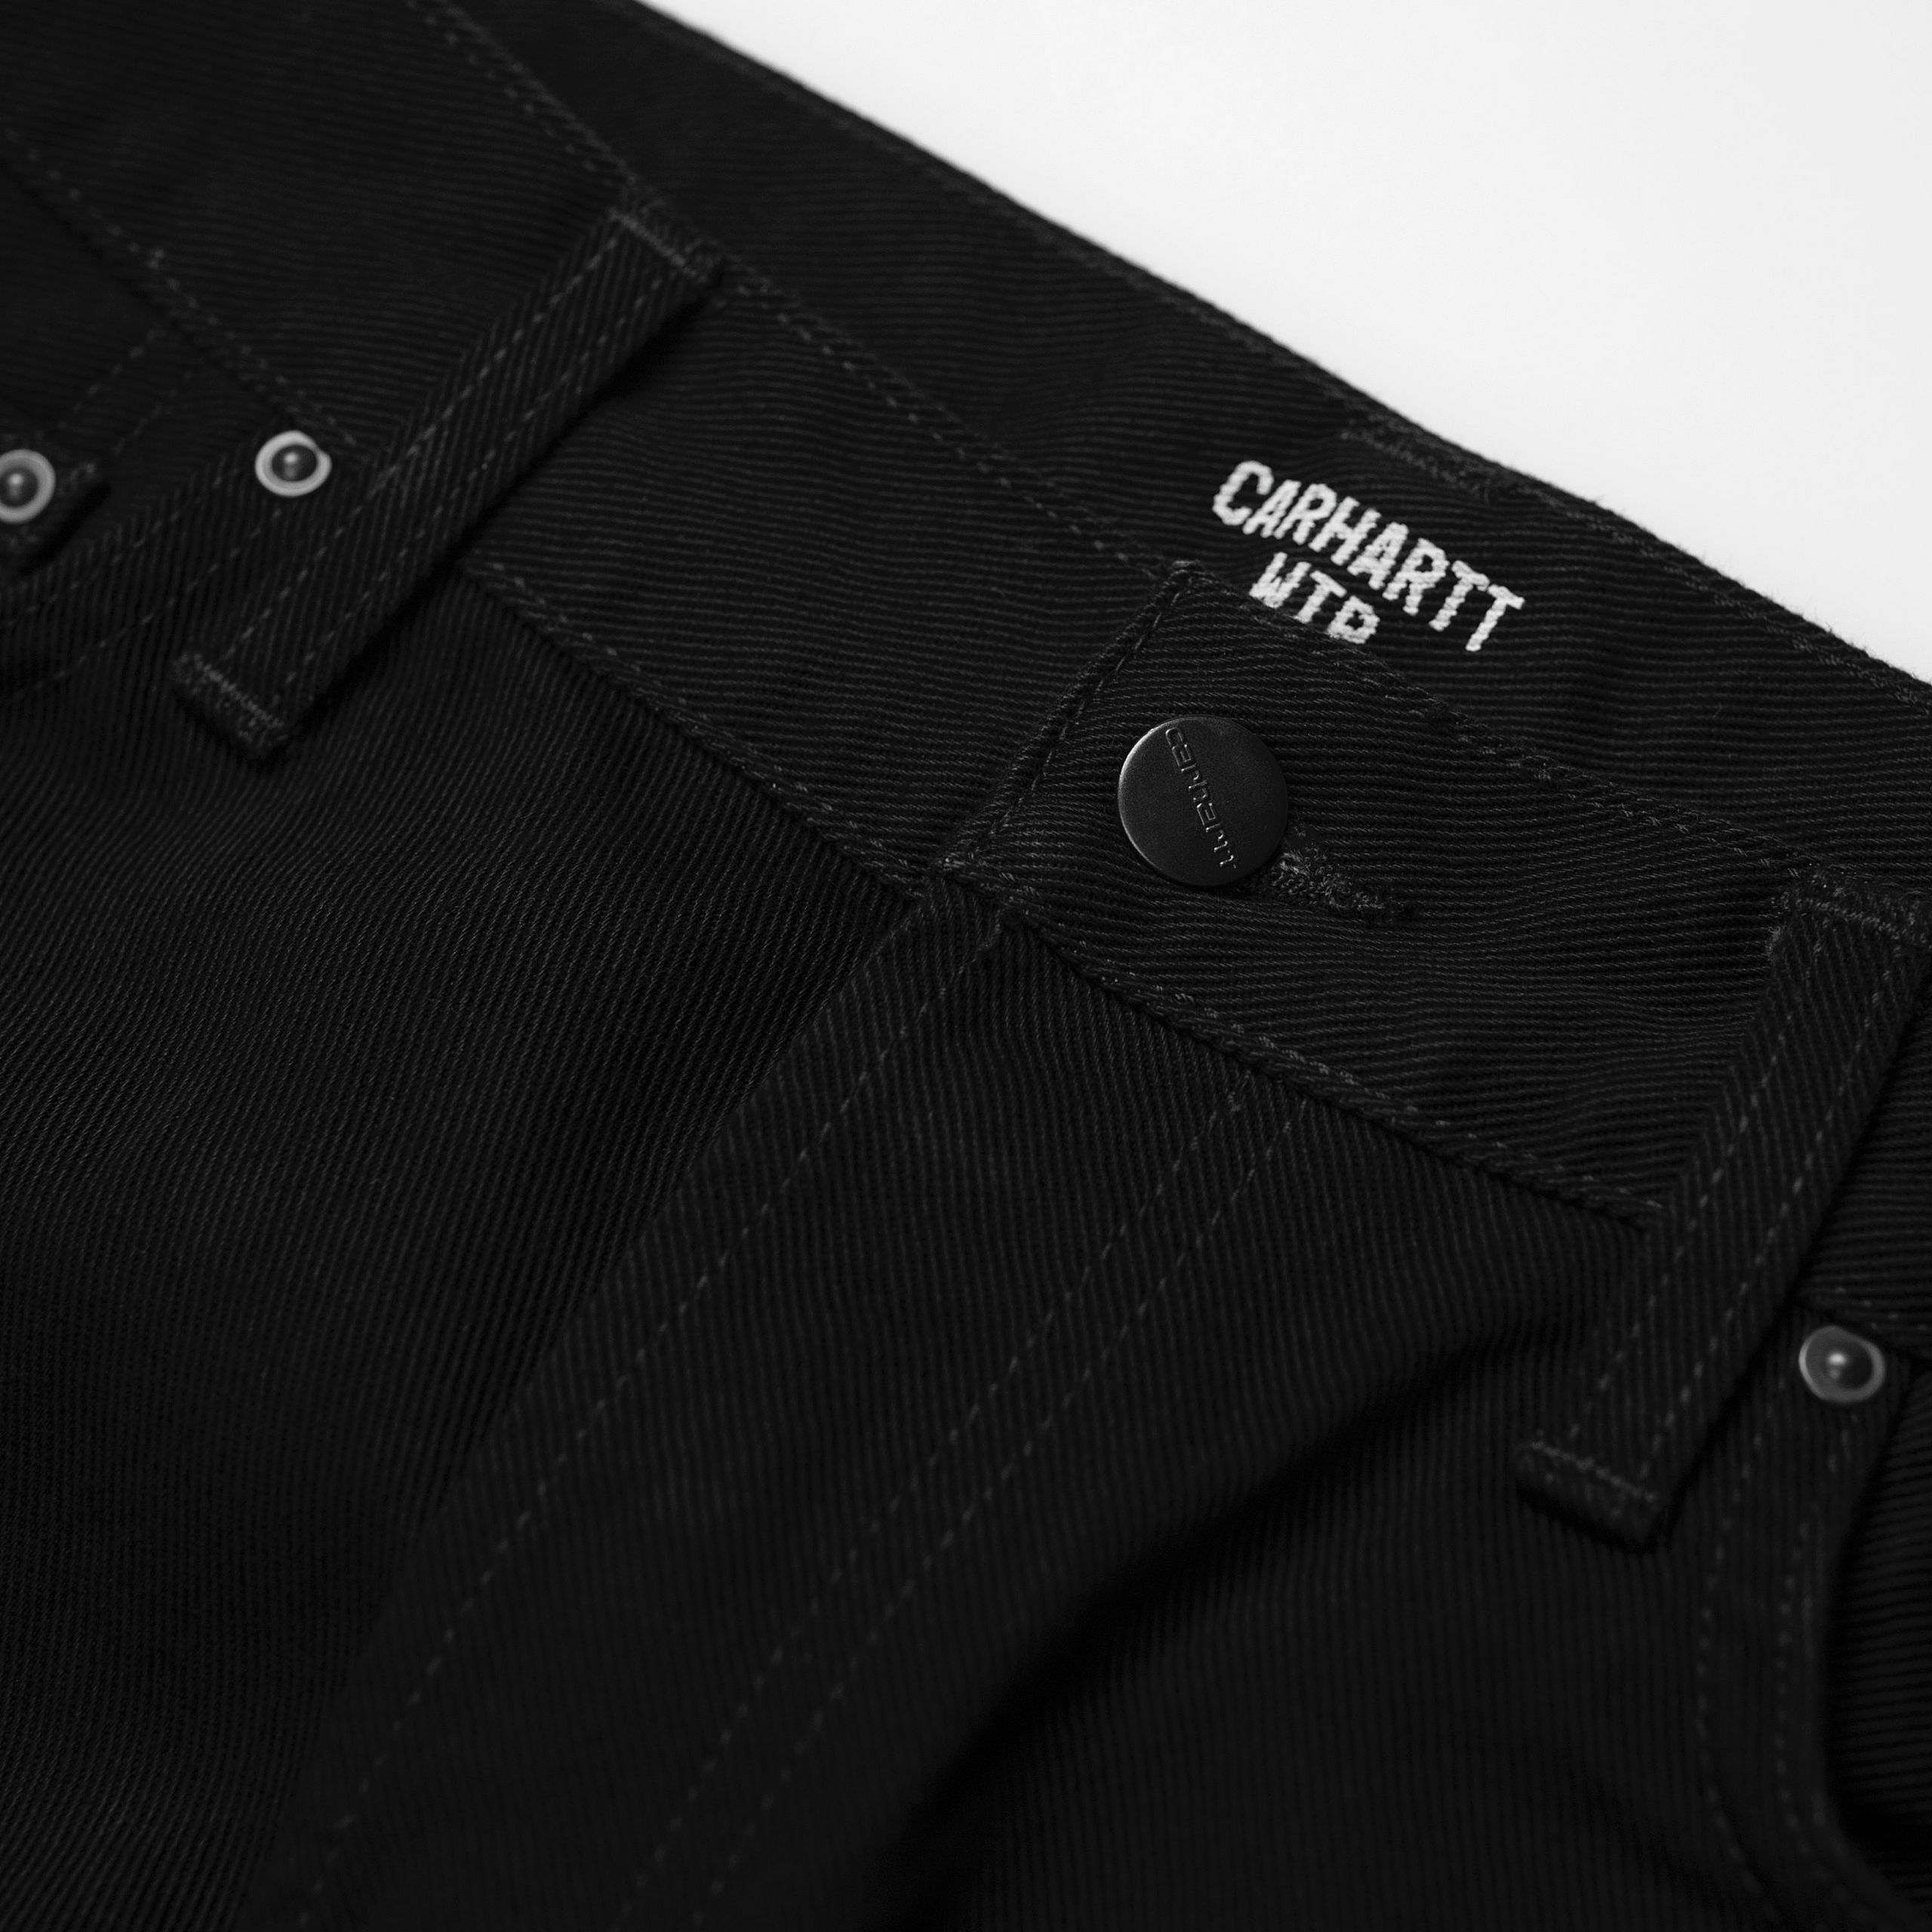 Carhartt WIP - KLONDIKE PANT - Black (Rinsed)